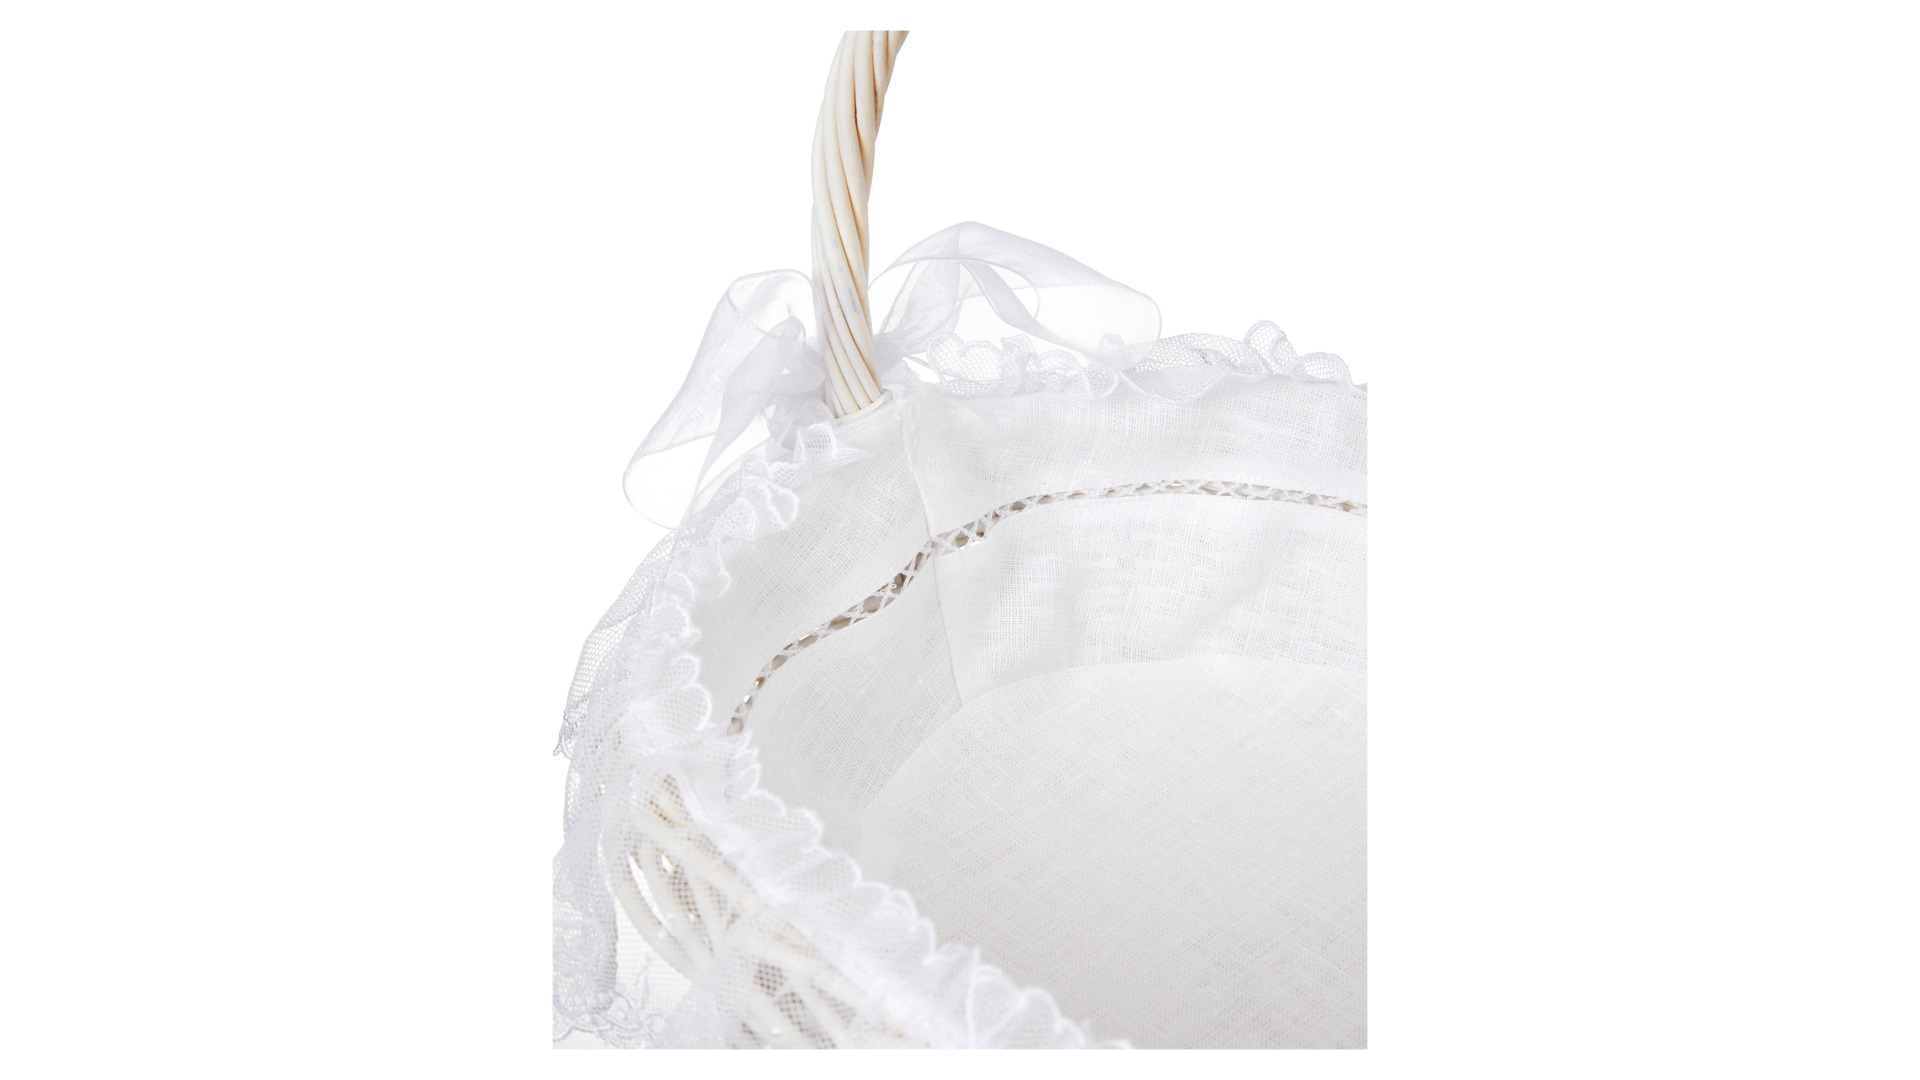 Набор пасхальный из корзины и тканевой вставки Венизное кружево Цветочная 25х35 см, белый, п/к